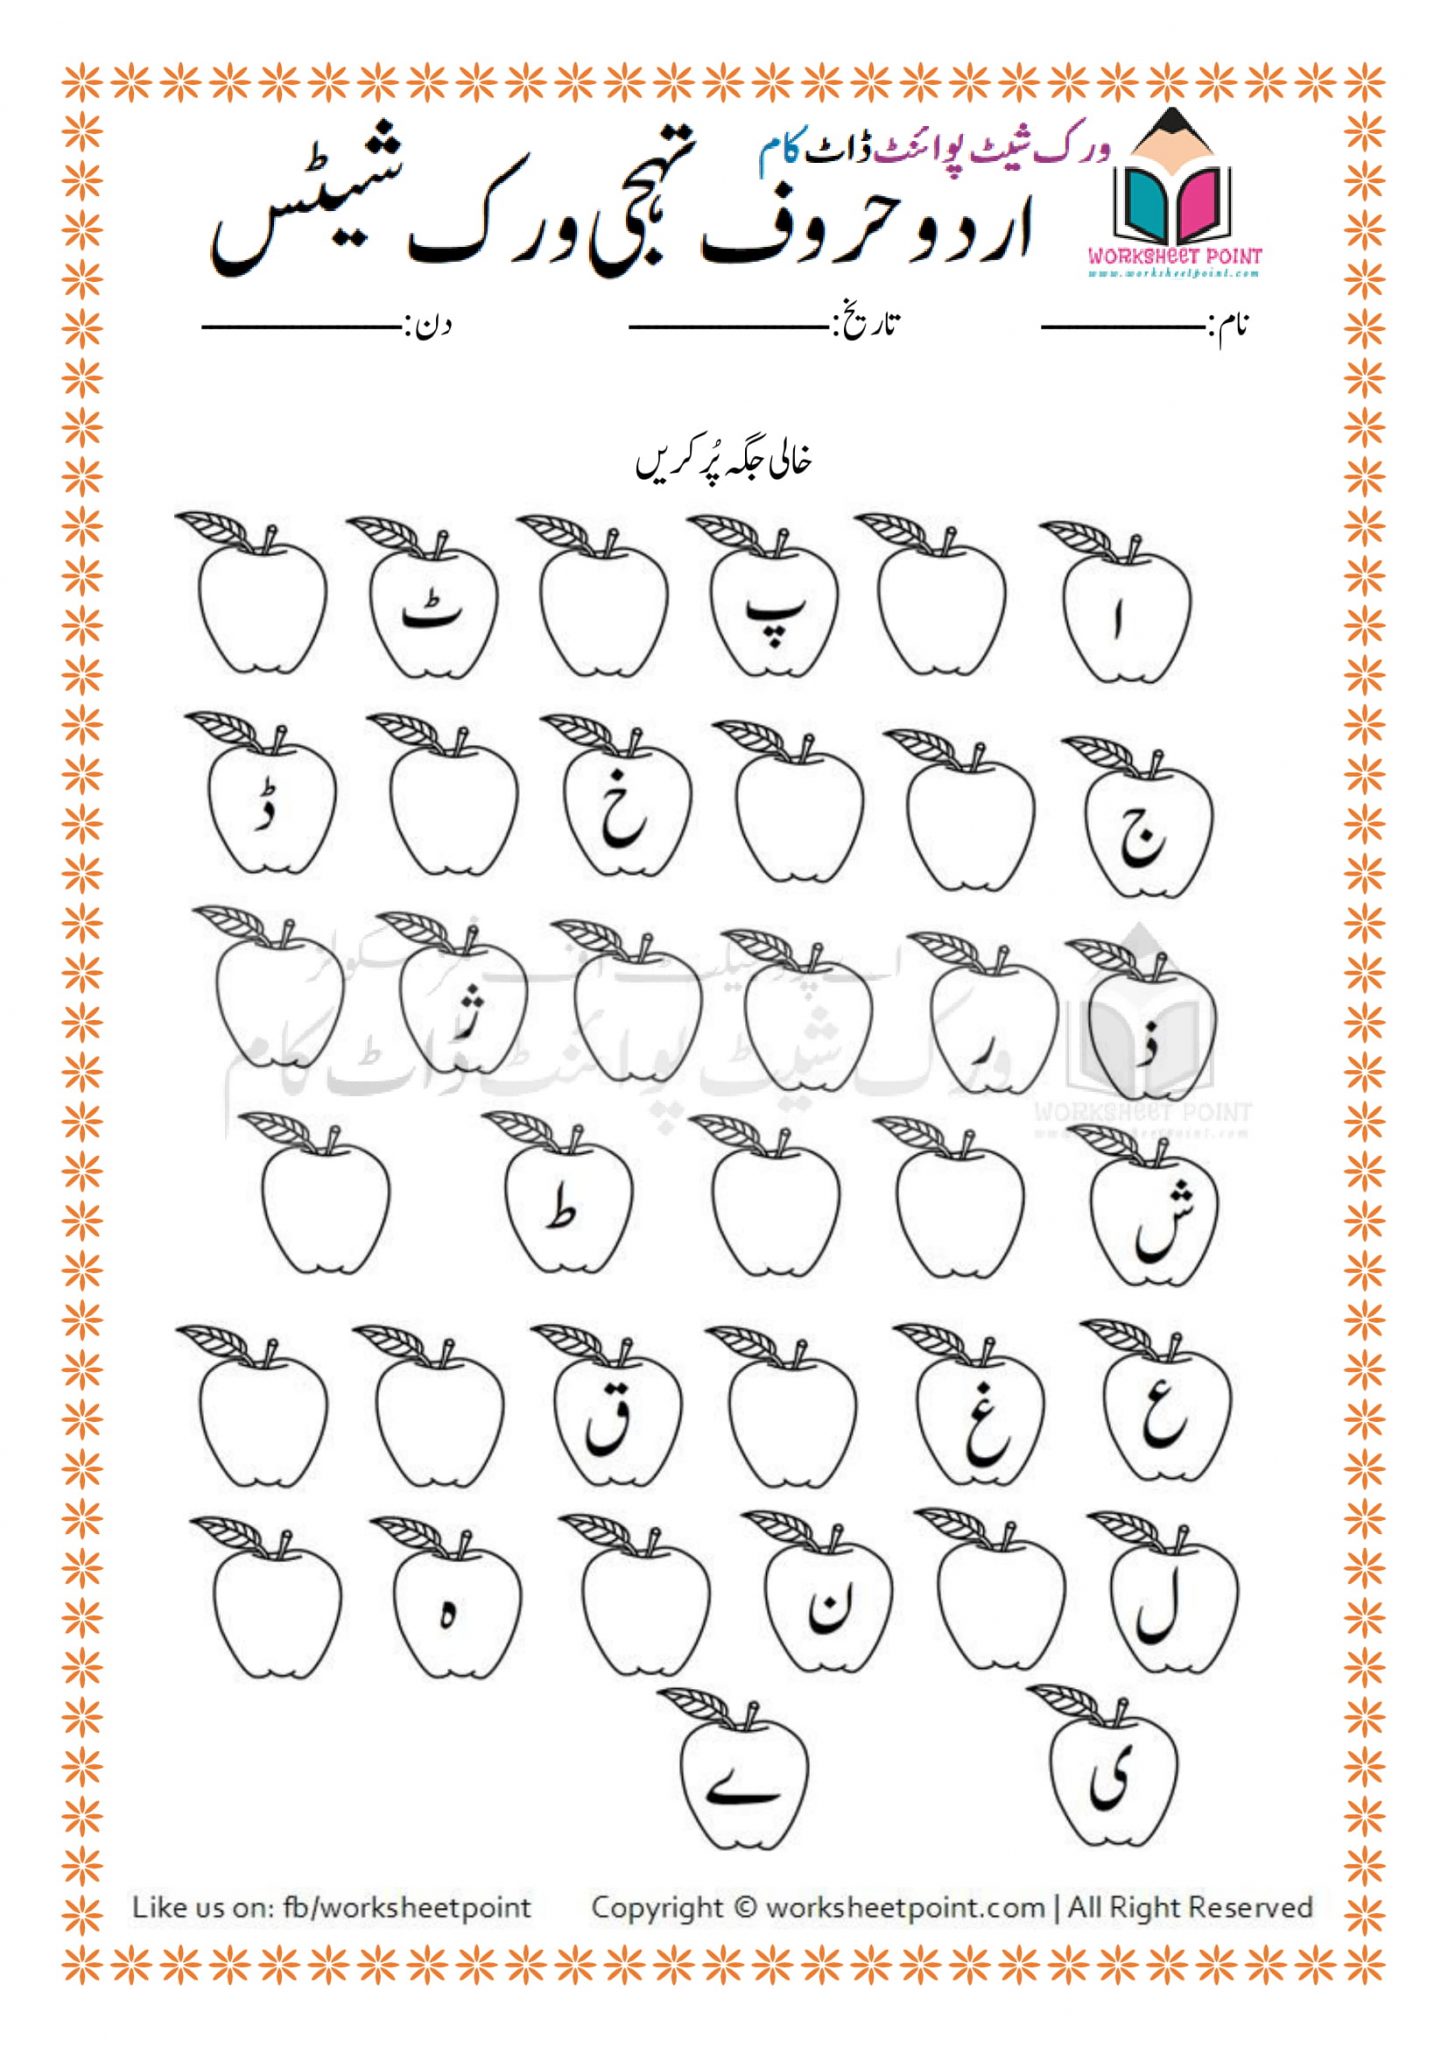 urdu-alphabets-worksheets-for-kids